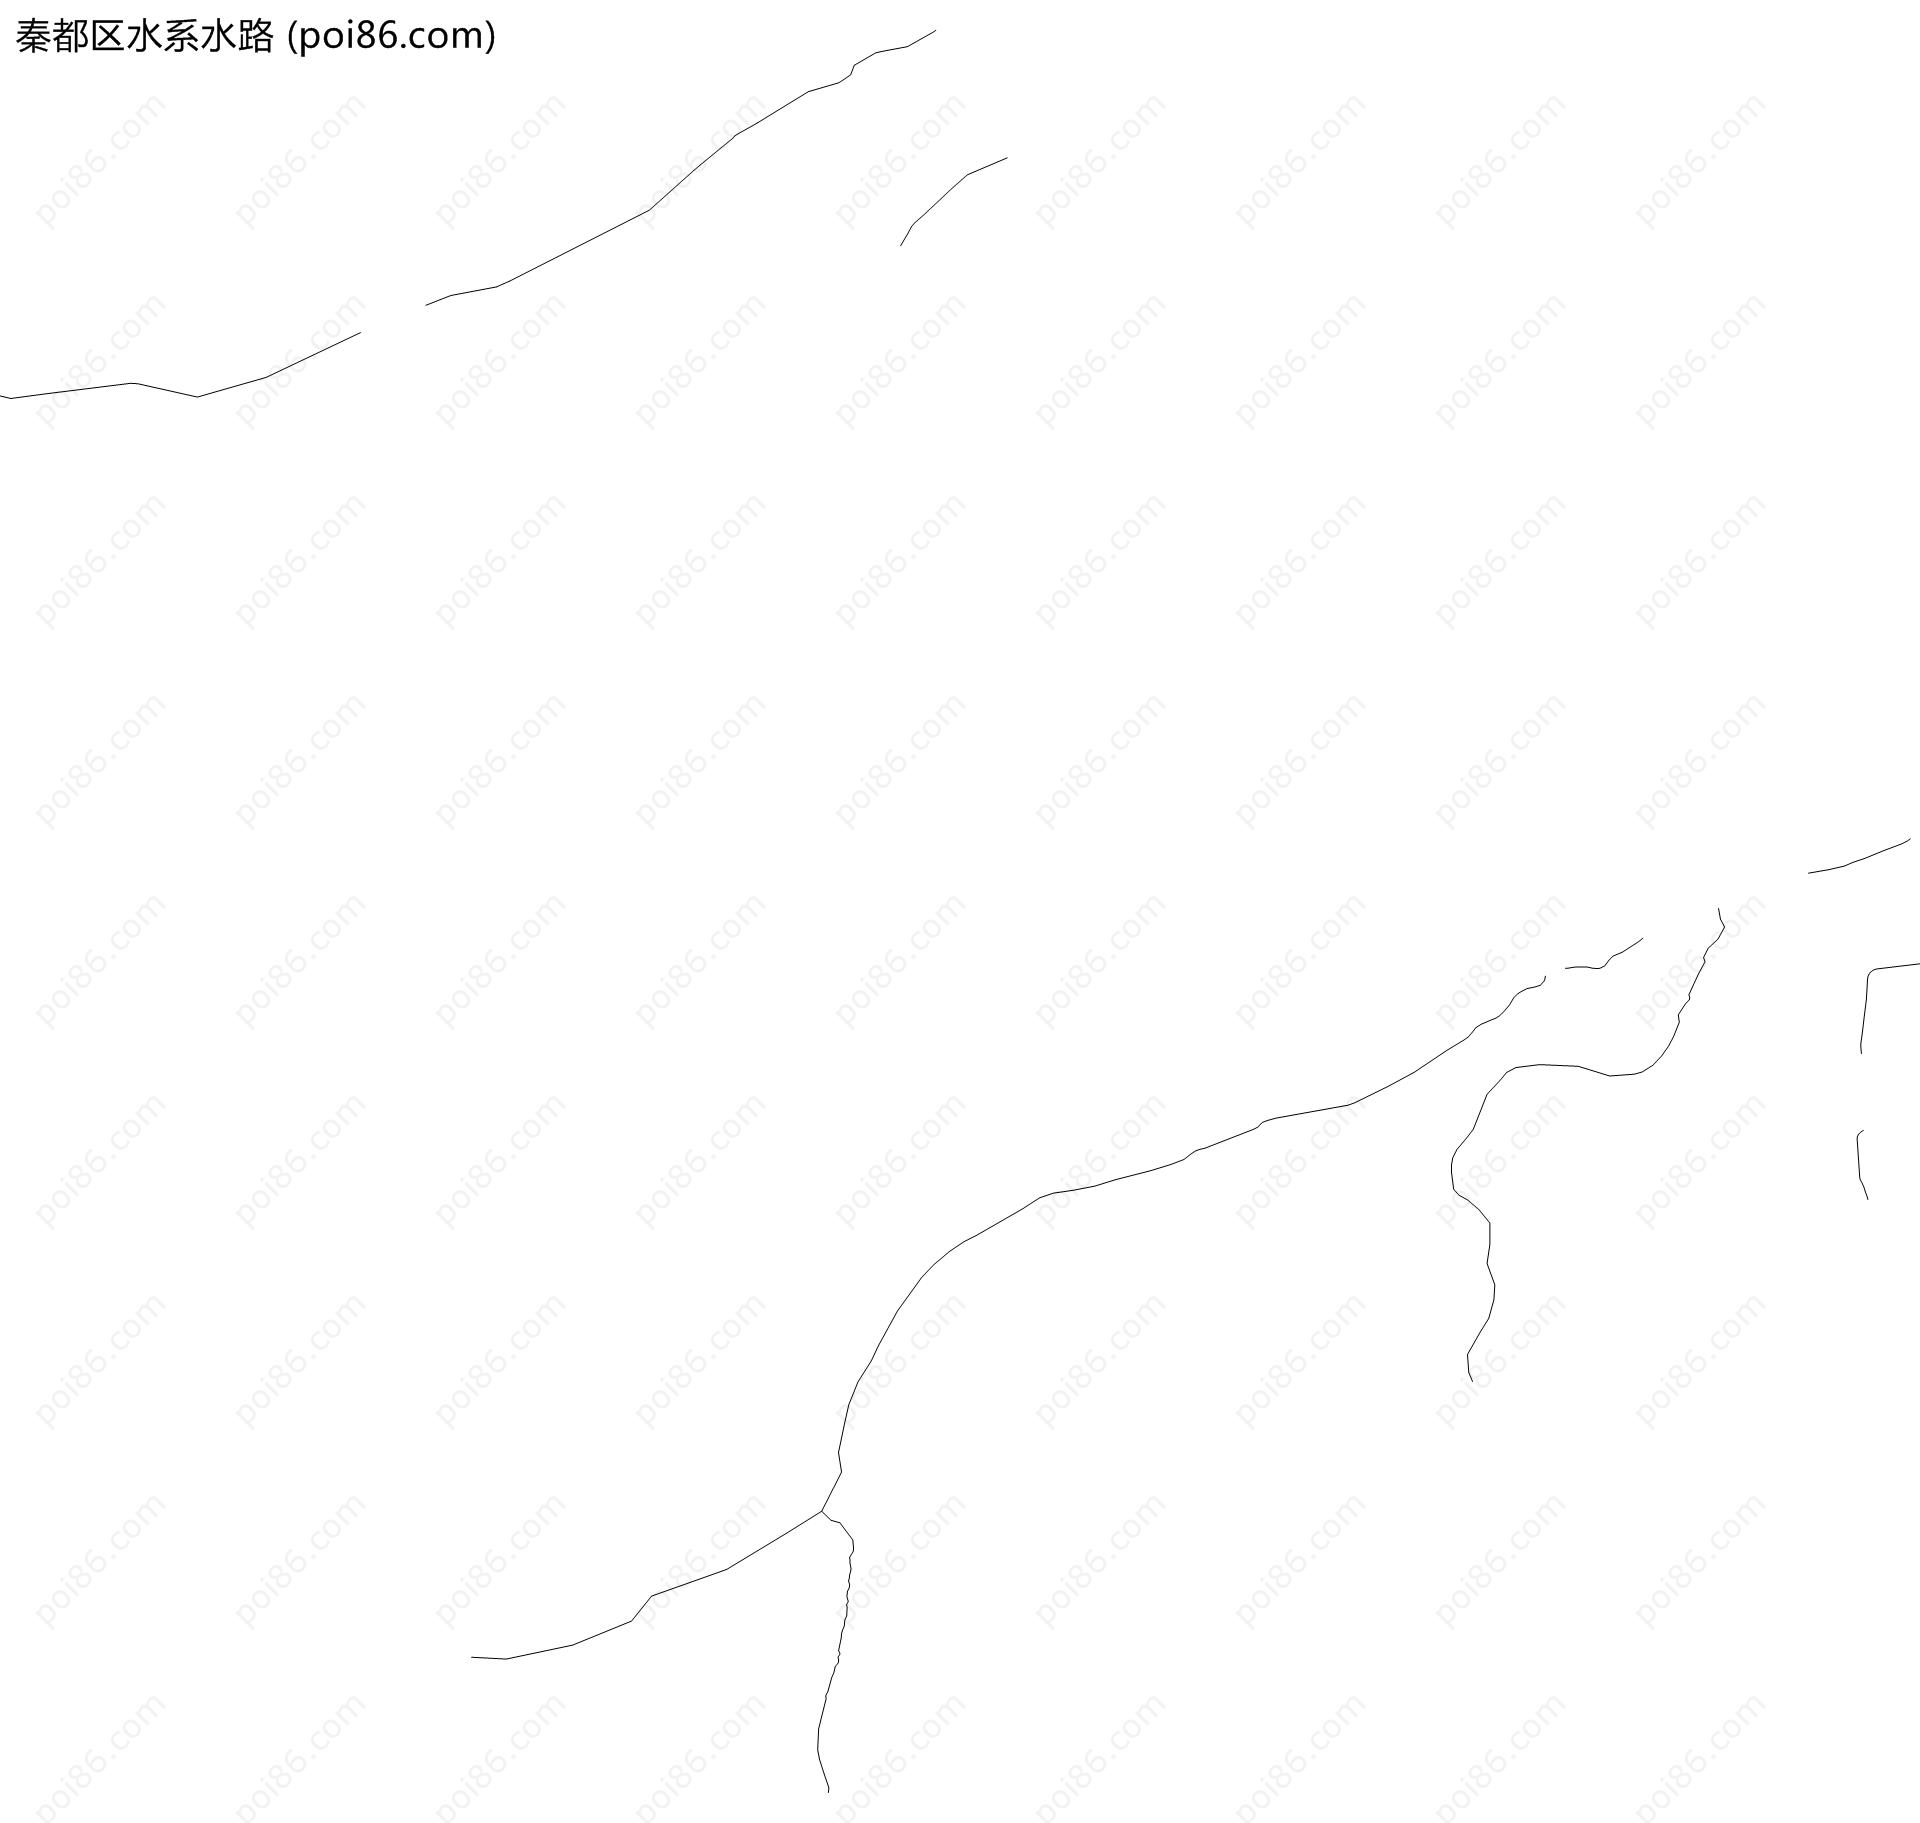 秦都区水系水路地图